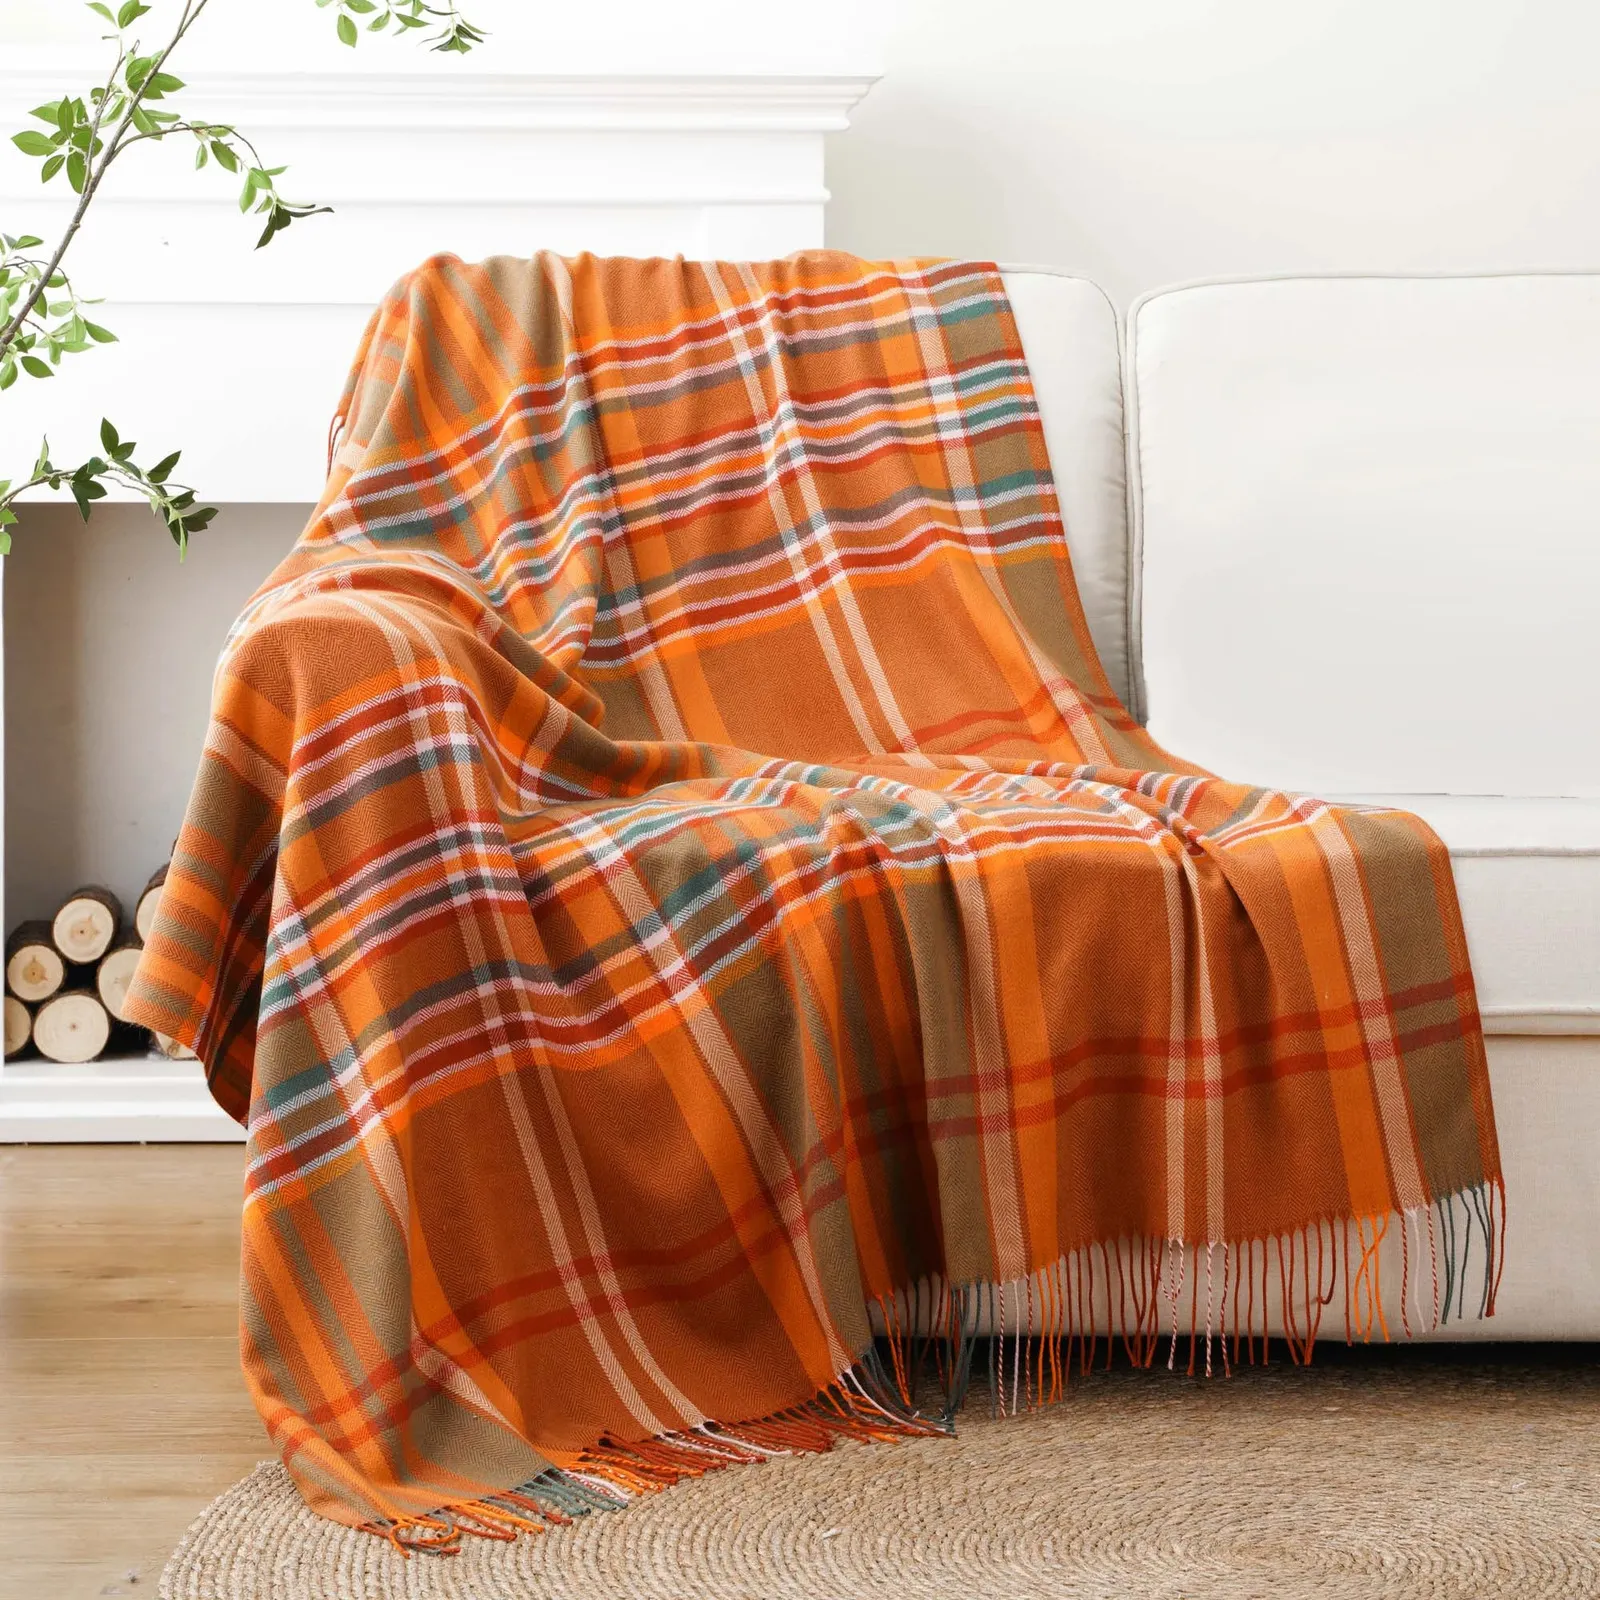 Одеяло Battilo Оранжевое пледы Одеяло в клетку Buffalo для дивана Очень мягкое одеяло из искусственного кашемира с кисточками Осенний декор Пледы 231129